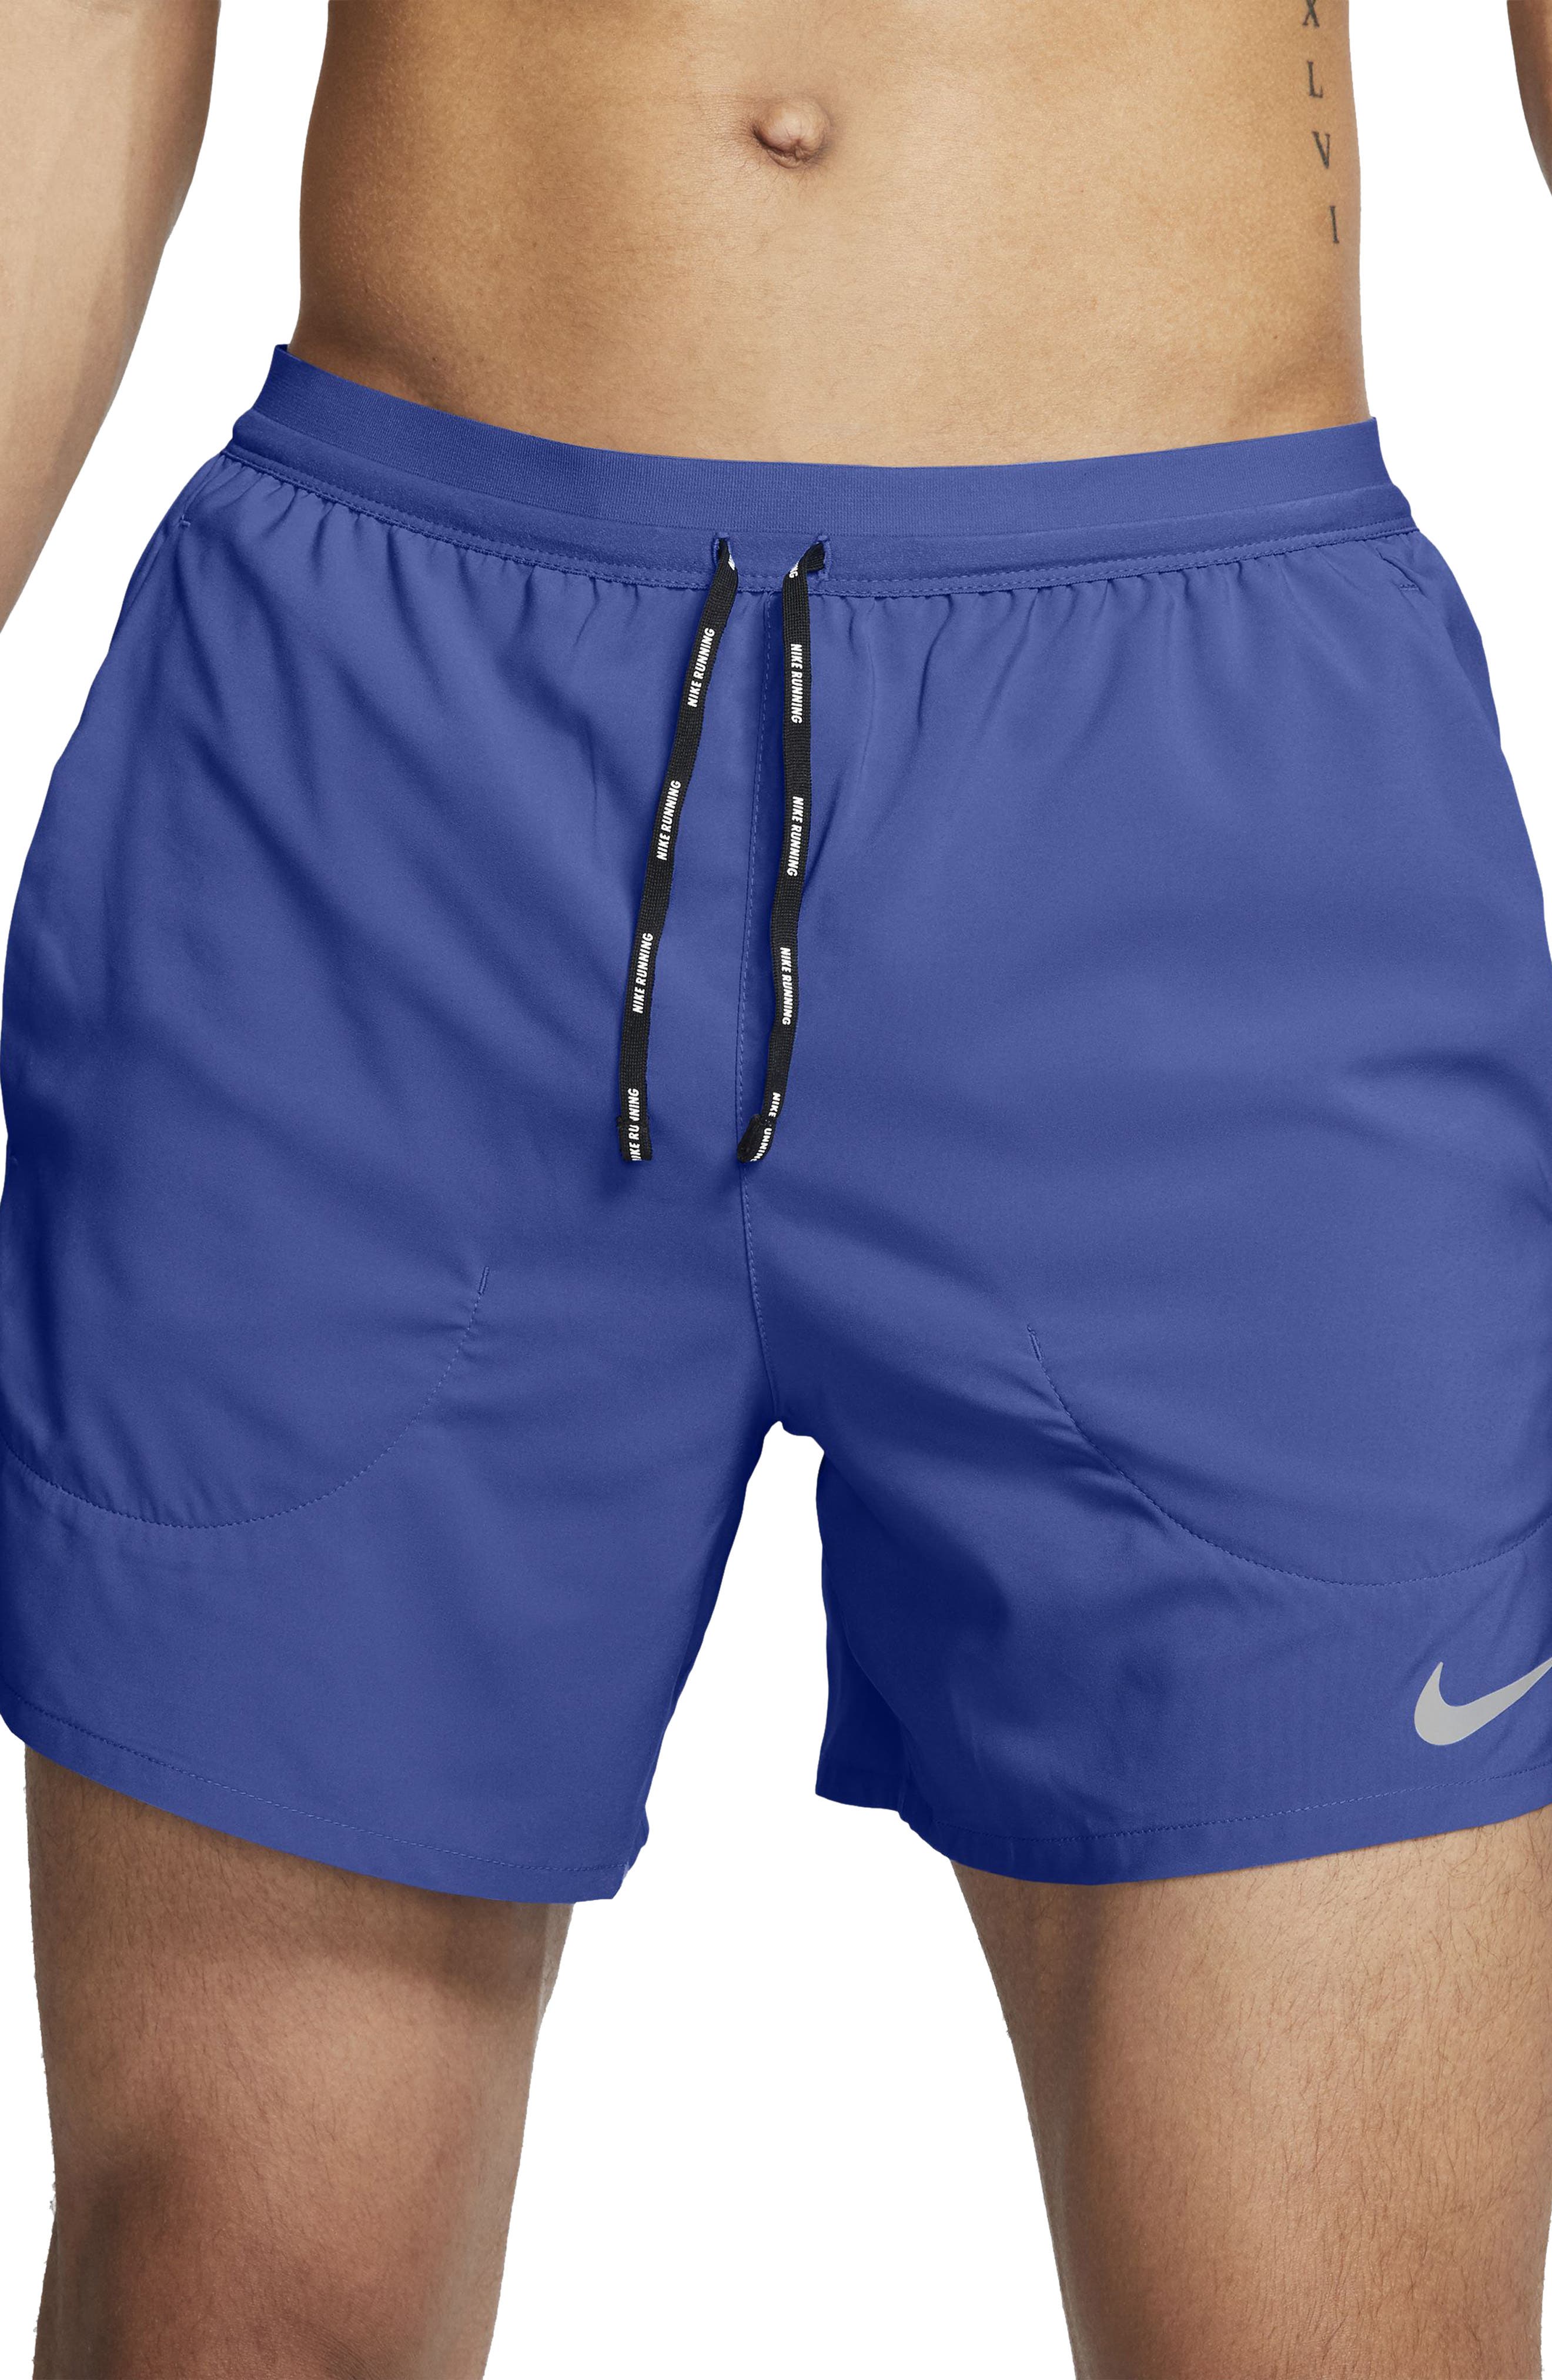 running shorts | Nordstrom